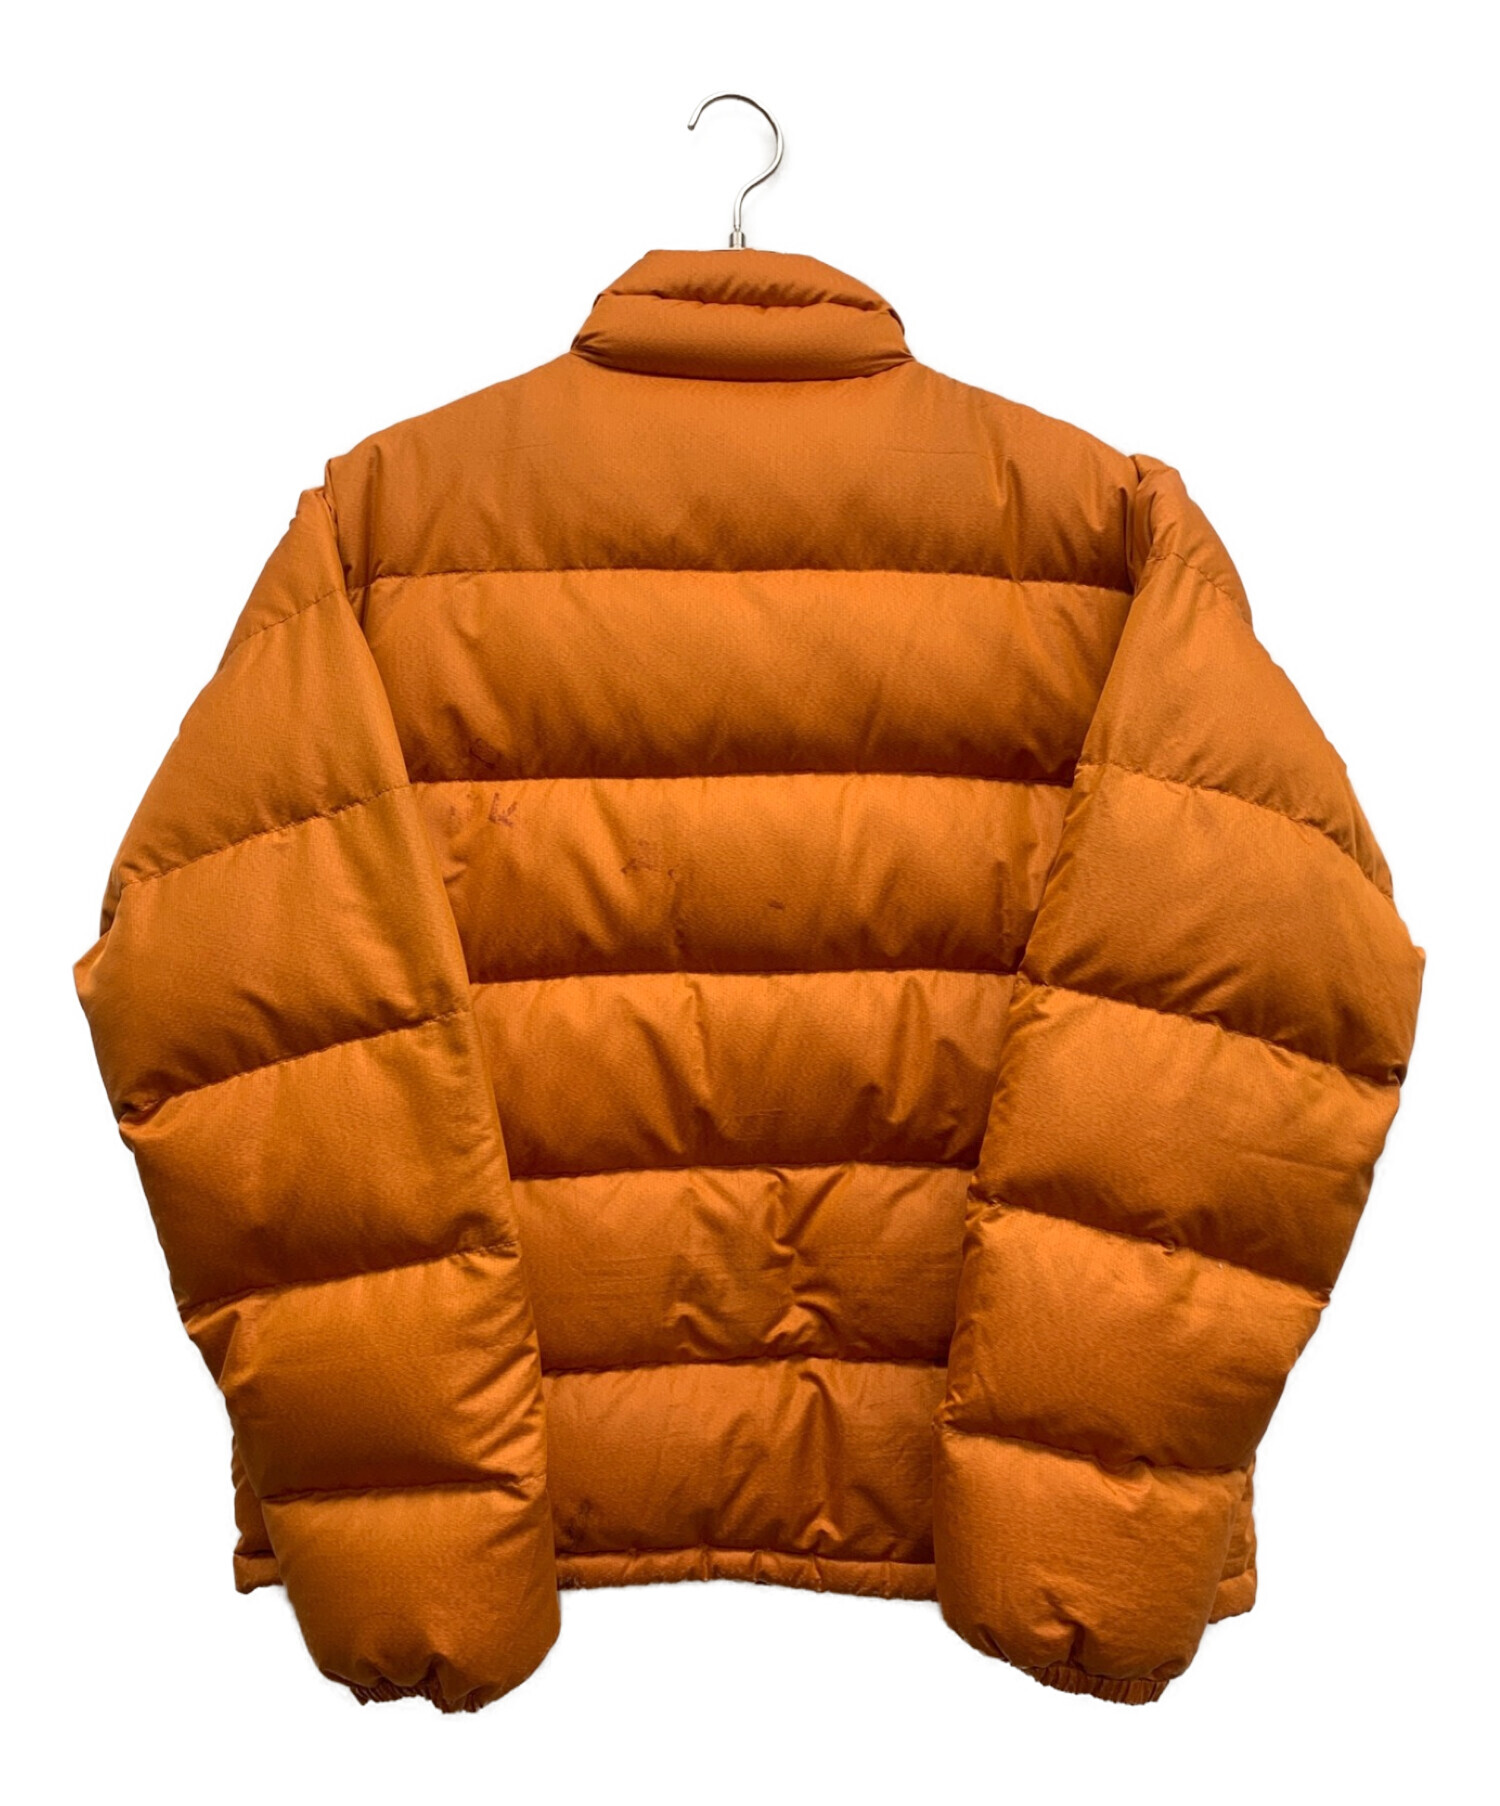 Patagonia (パタゴニア) ダウンジャケット オレンジ サイズ:M